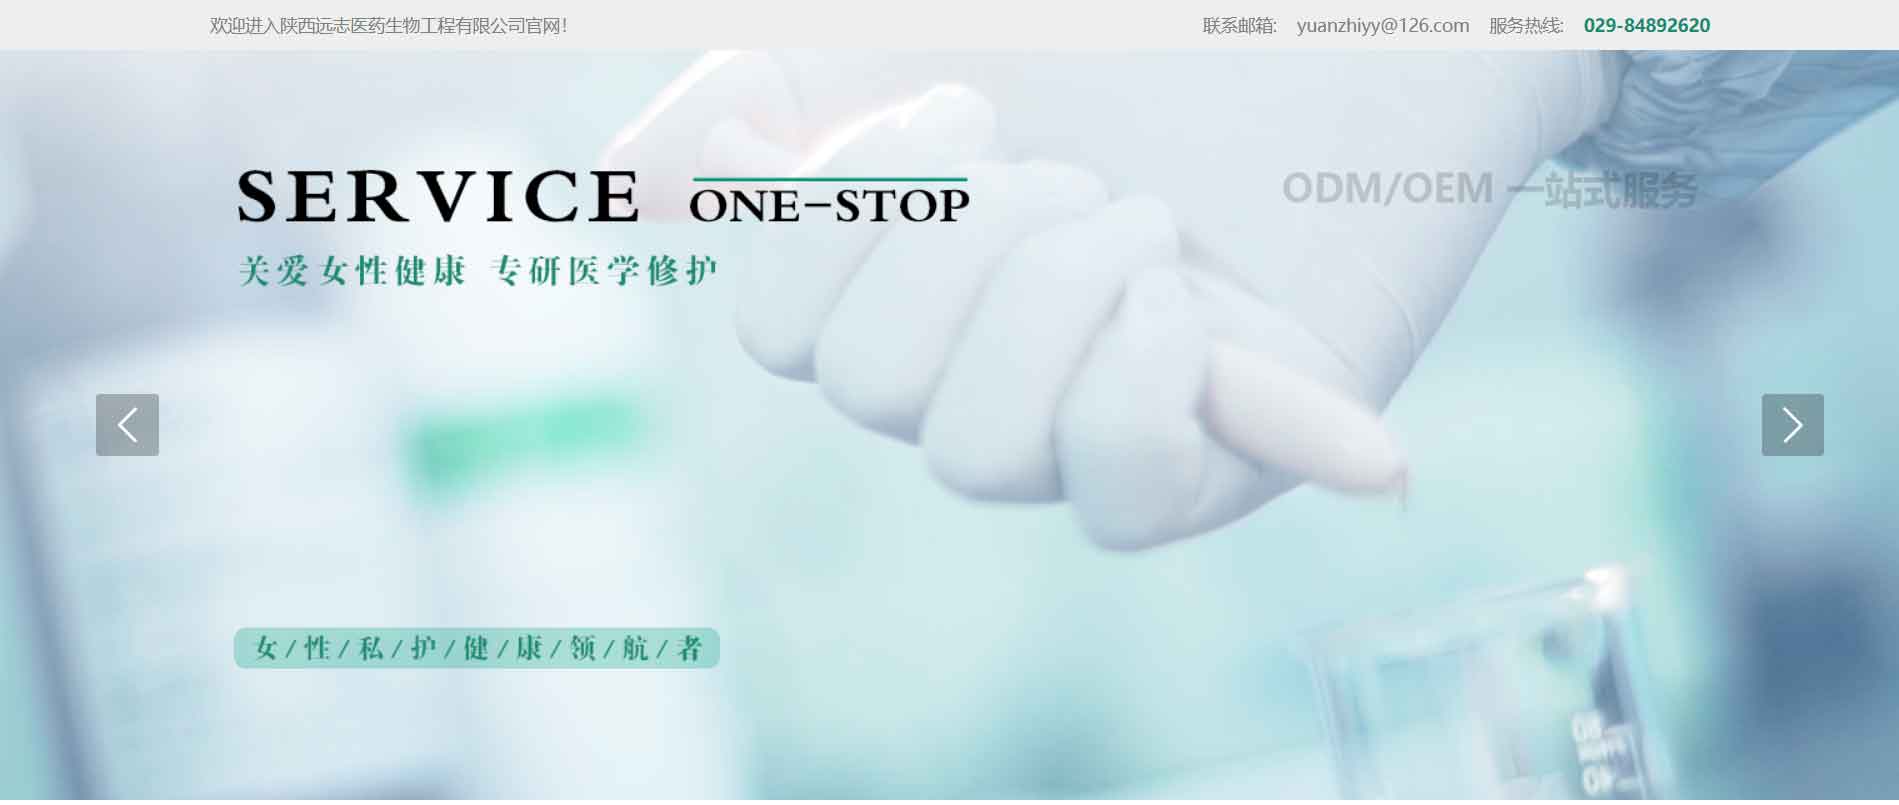 案例展示 | 陕西远志医药生物工程有限公司_响应式医药行业品牌官网